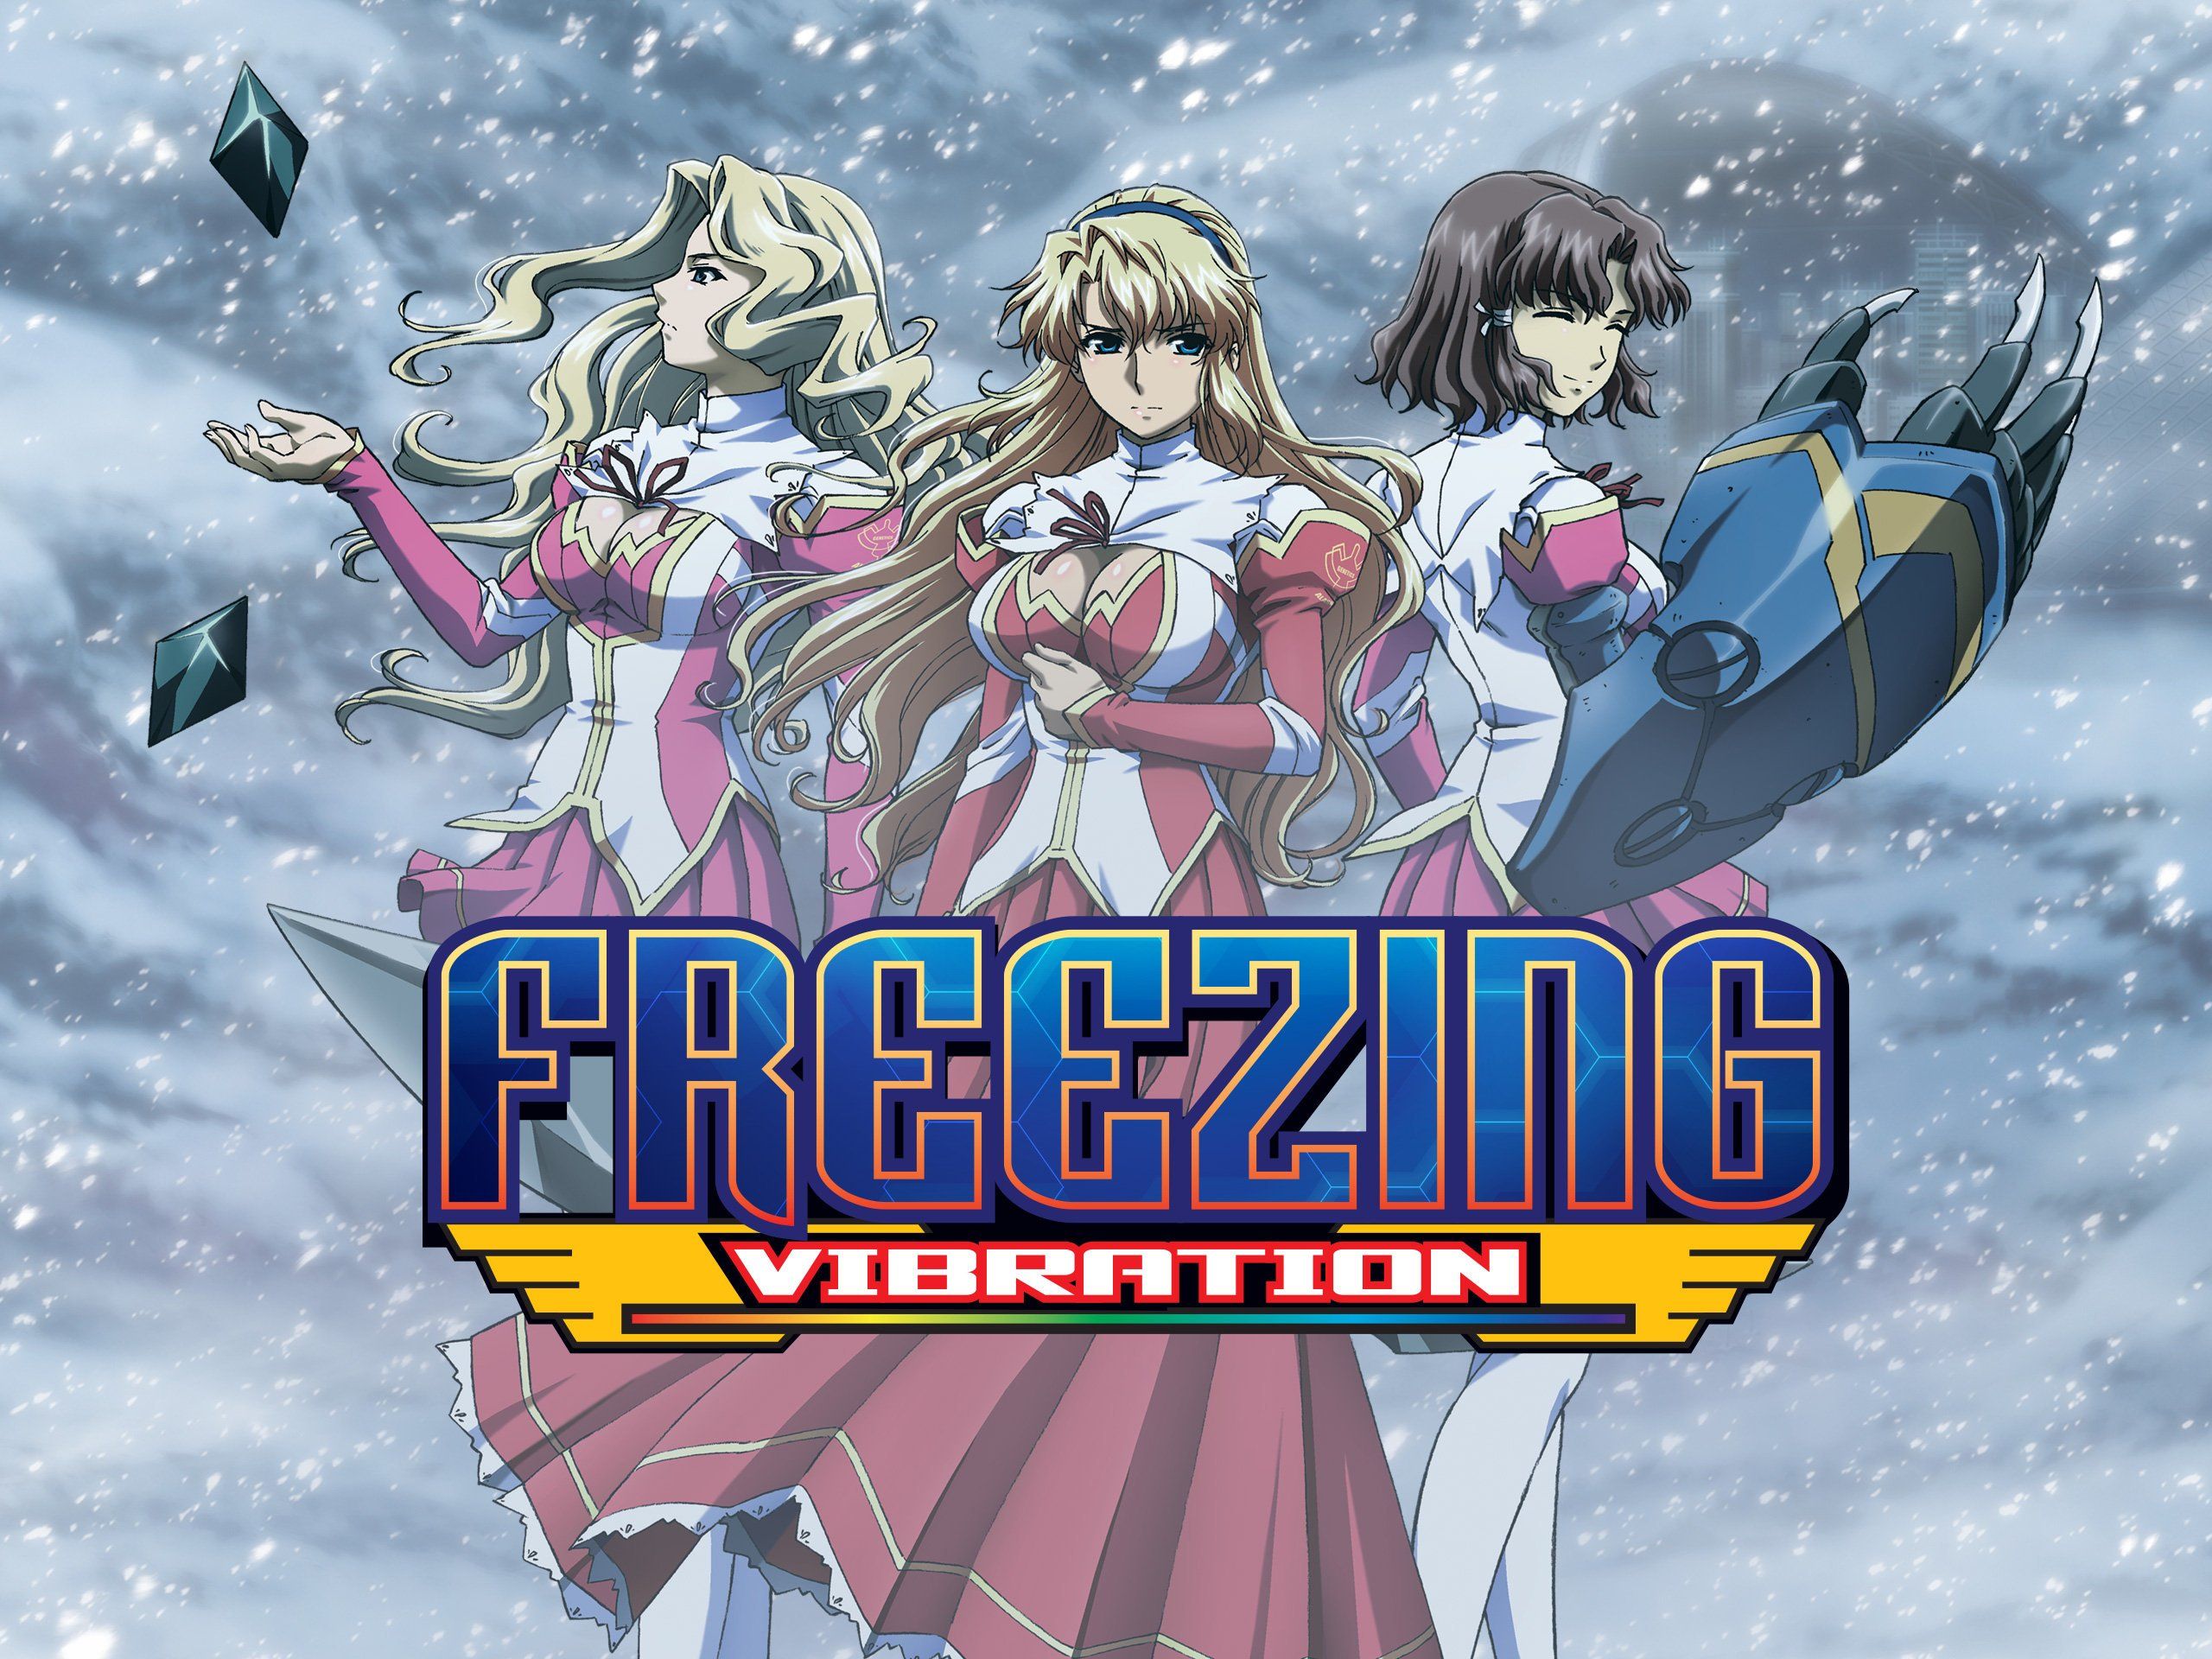 Watch Freezing: Vibration, Season 2